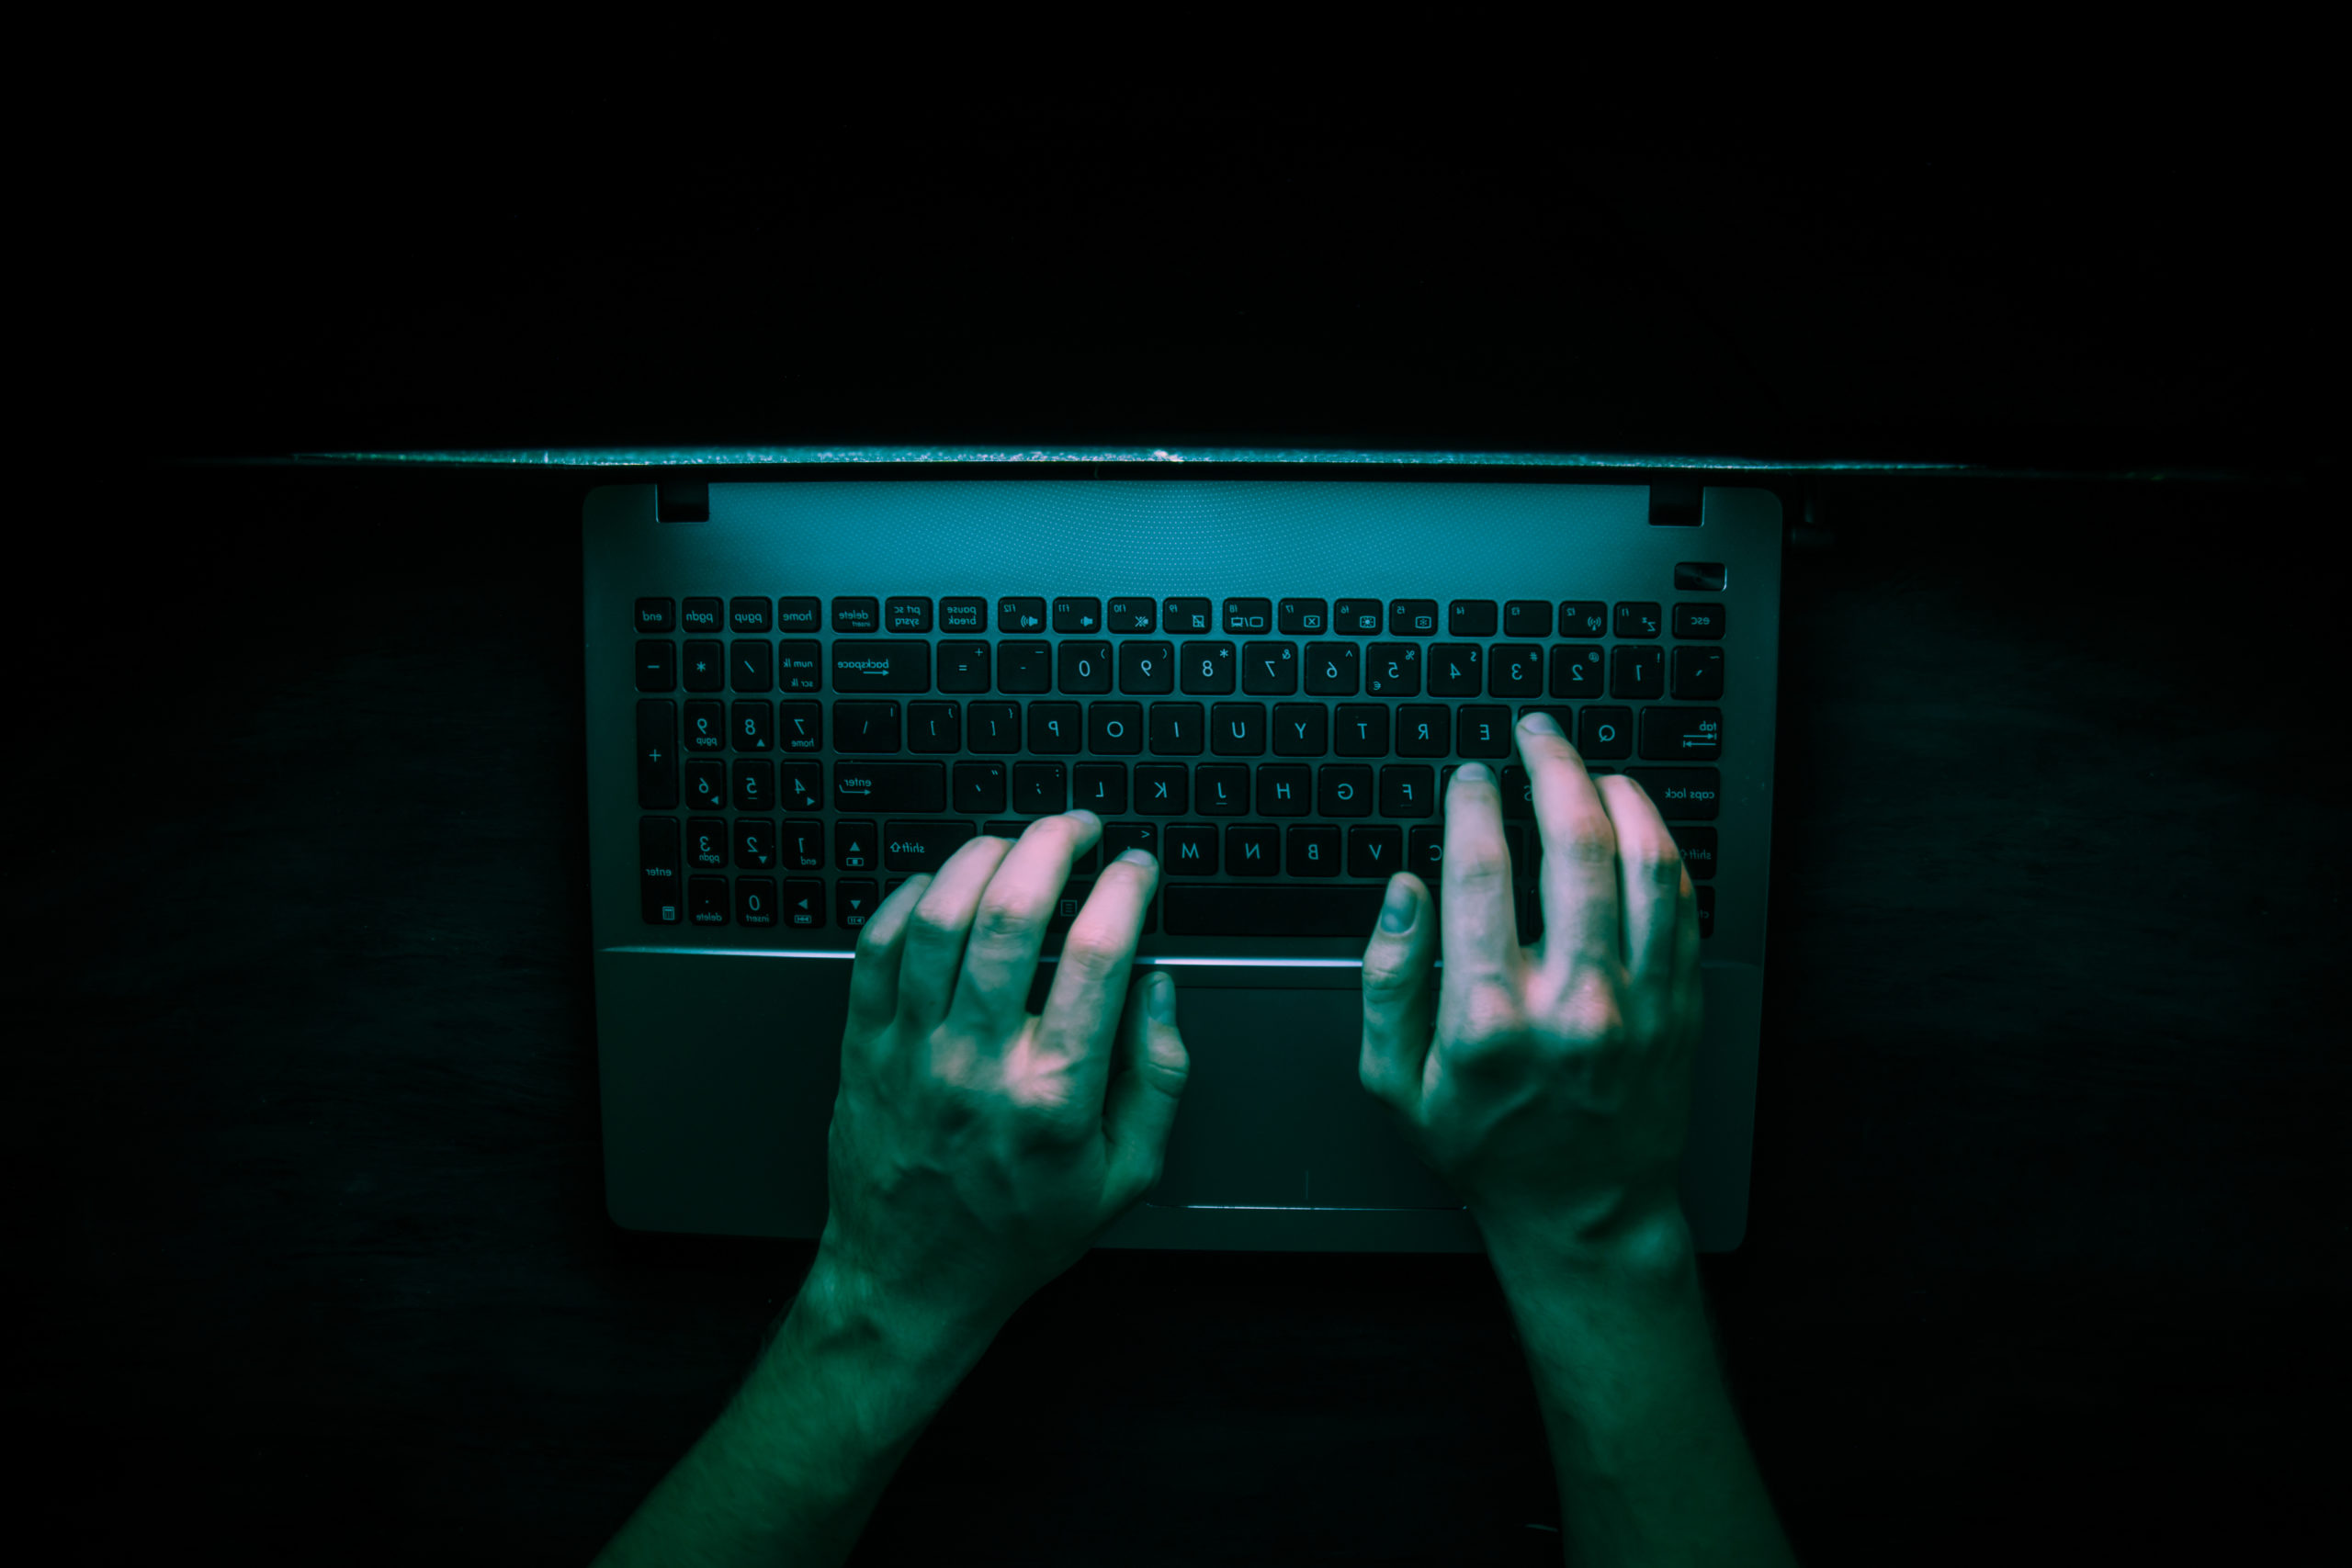 birds-eye view of a hacker on a laptop in the dark